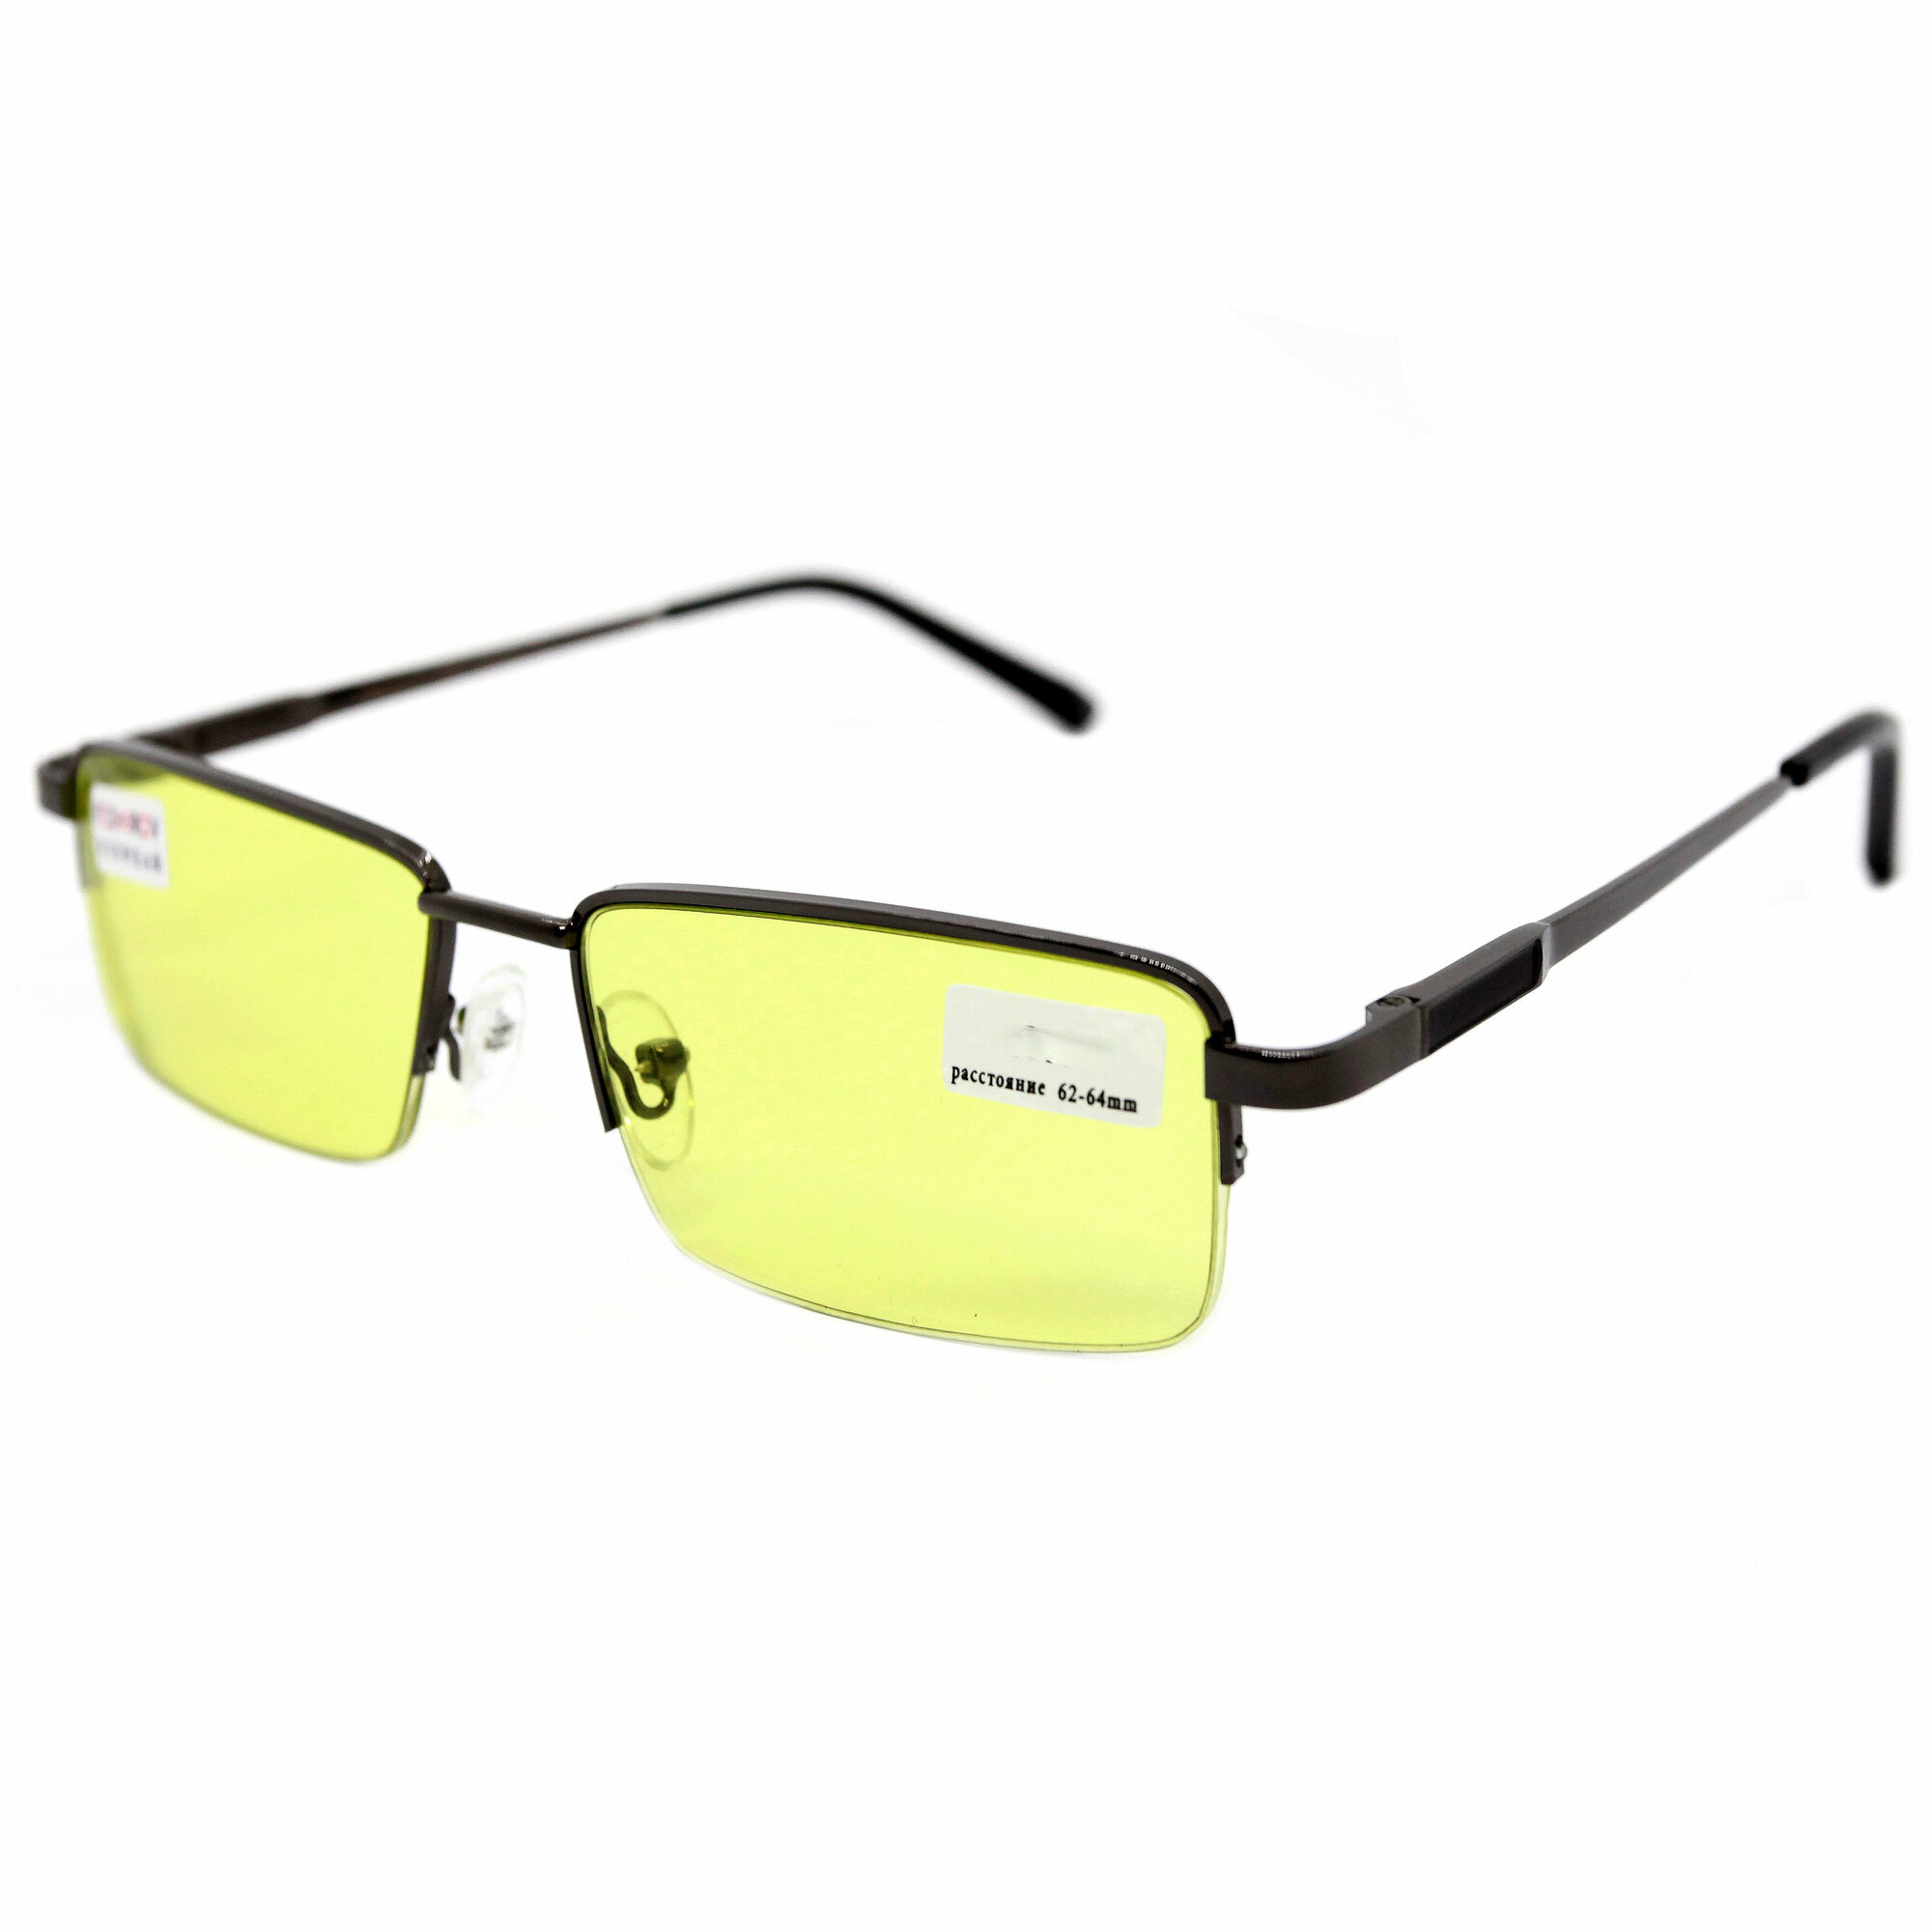 Водительские очки желтые с диоптриями (-1.25) FEDROV 088 антифара без футляра РЦ 62-64